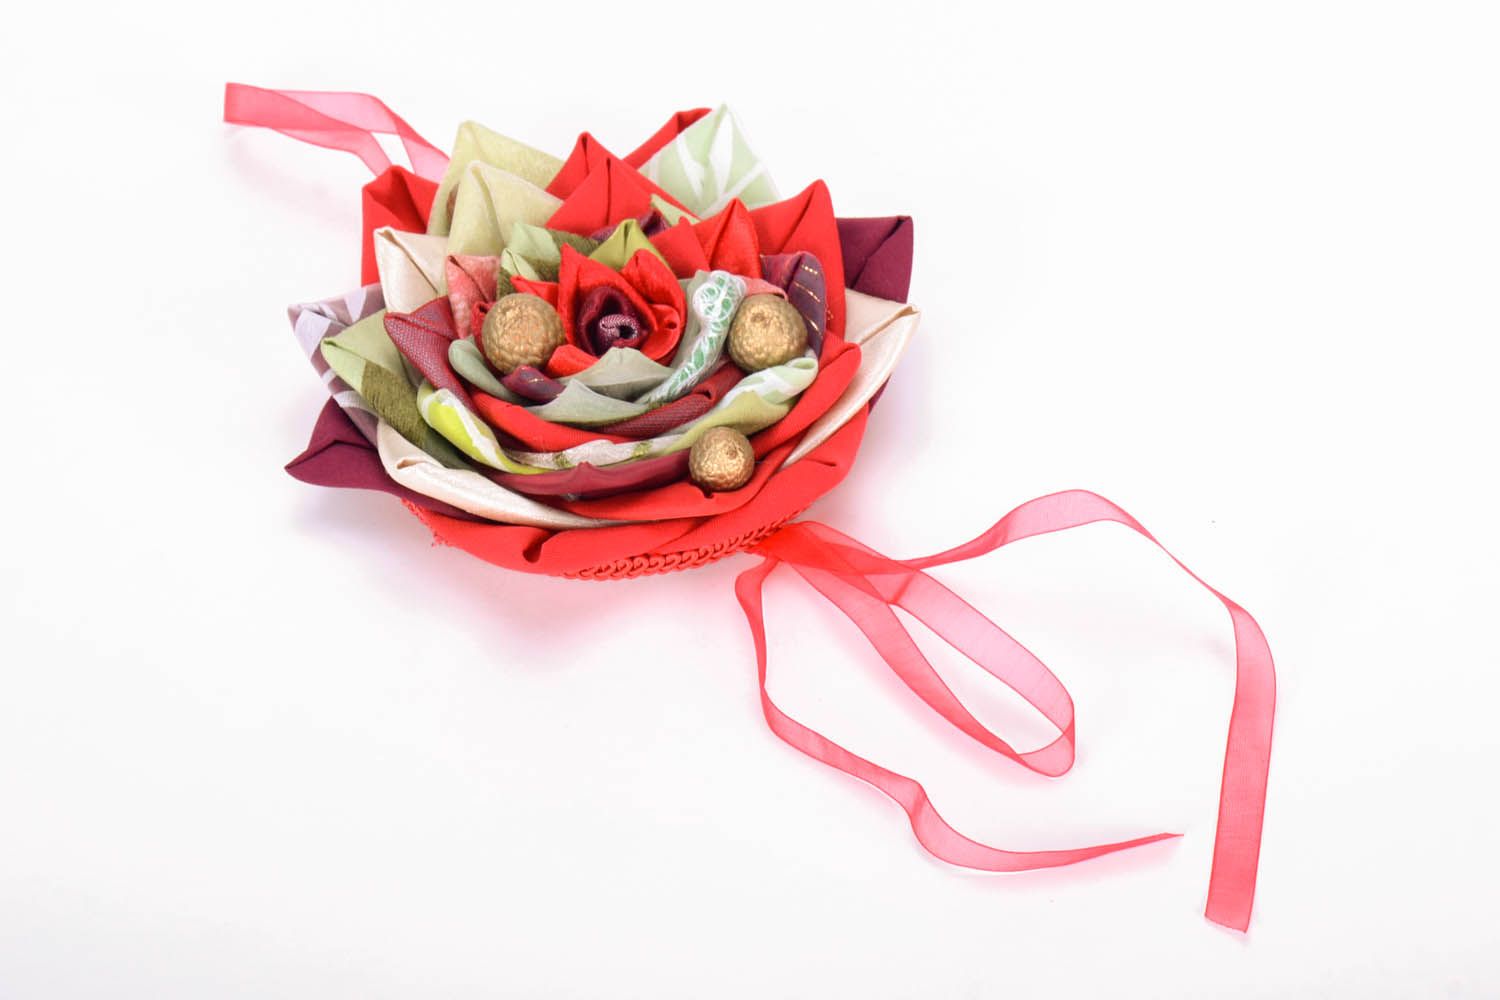 Brinquedo macio inquebrável de Natal feito de papelão e pano e decorado com nozes foto 2